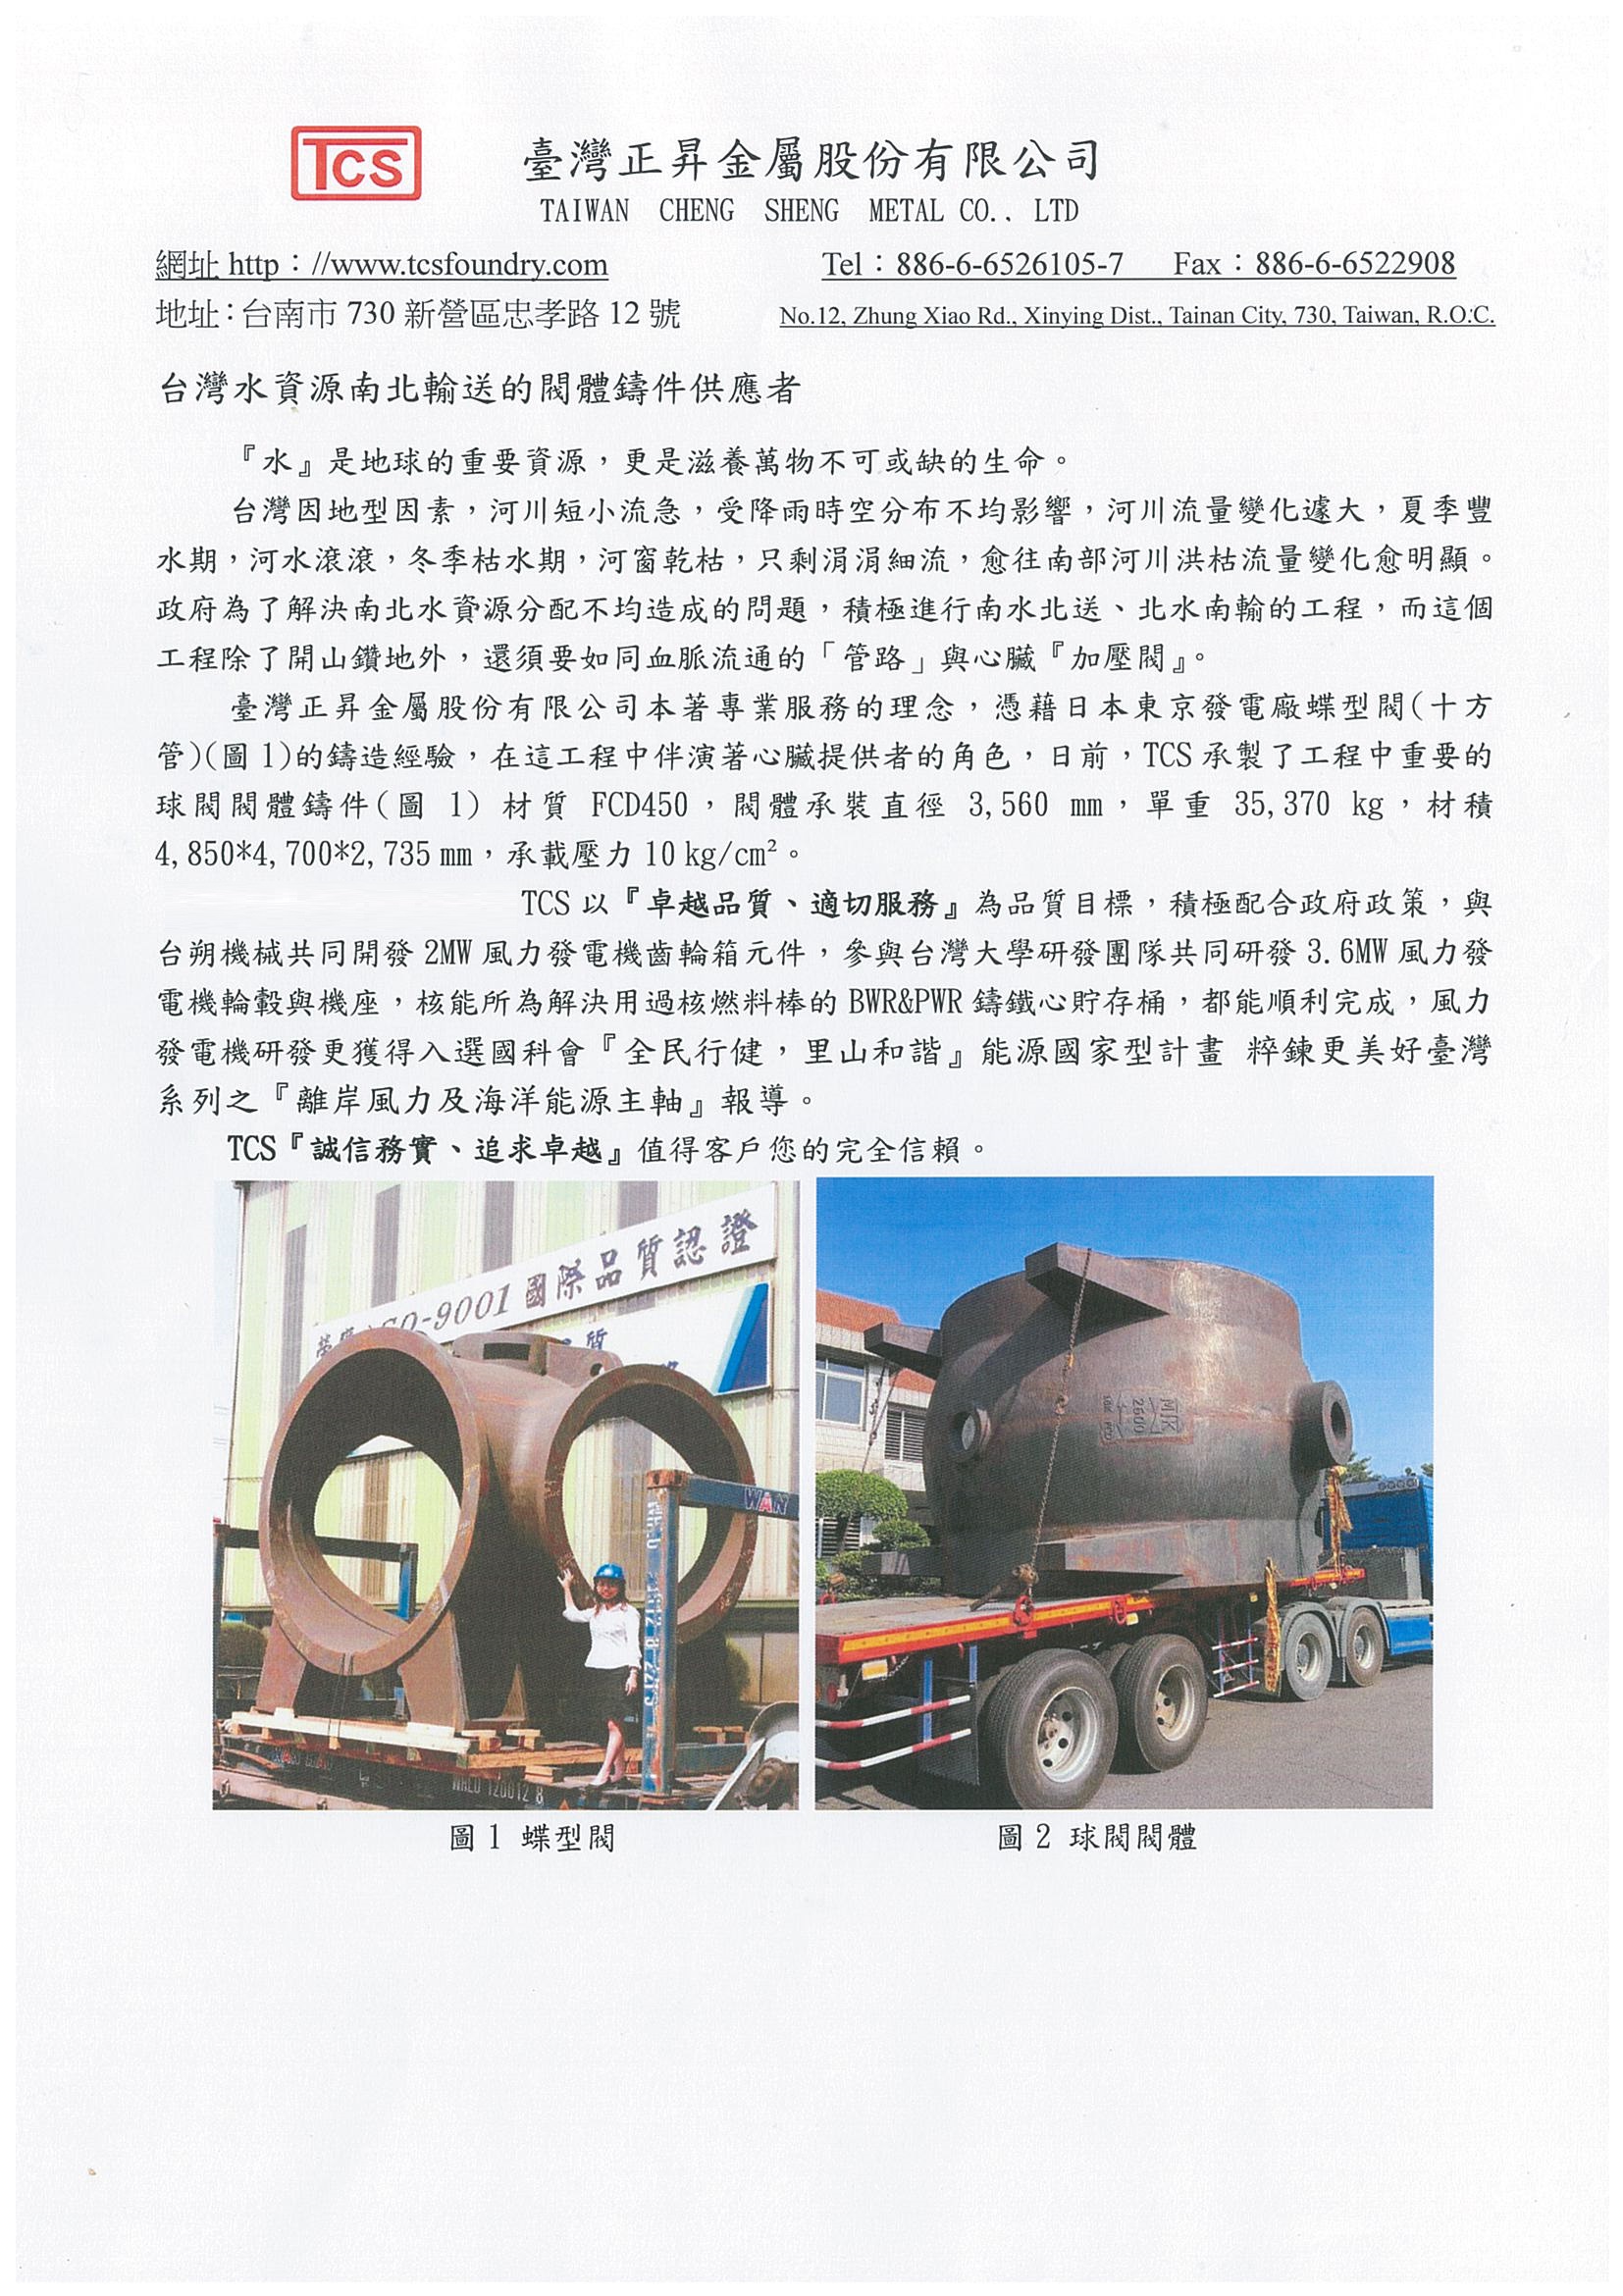 台灣水資源南北輸送的閥體鑄件供應者